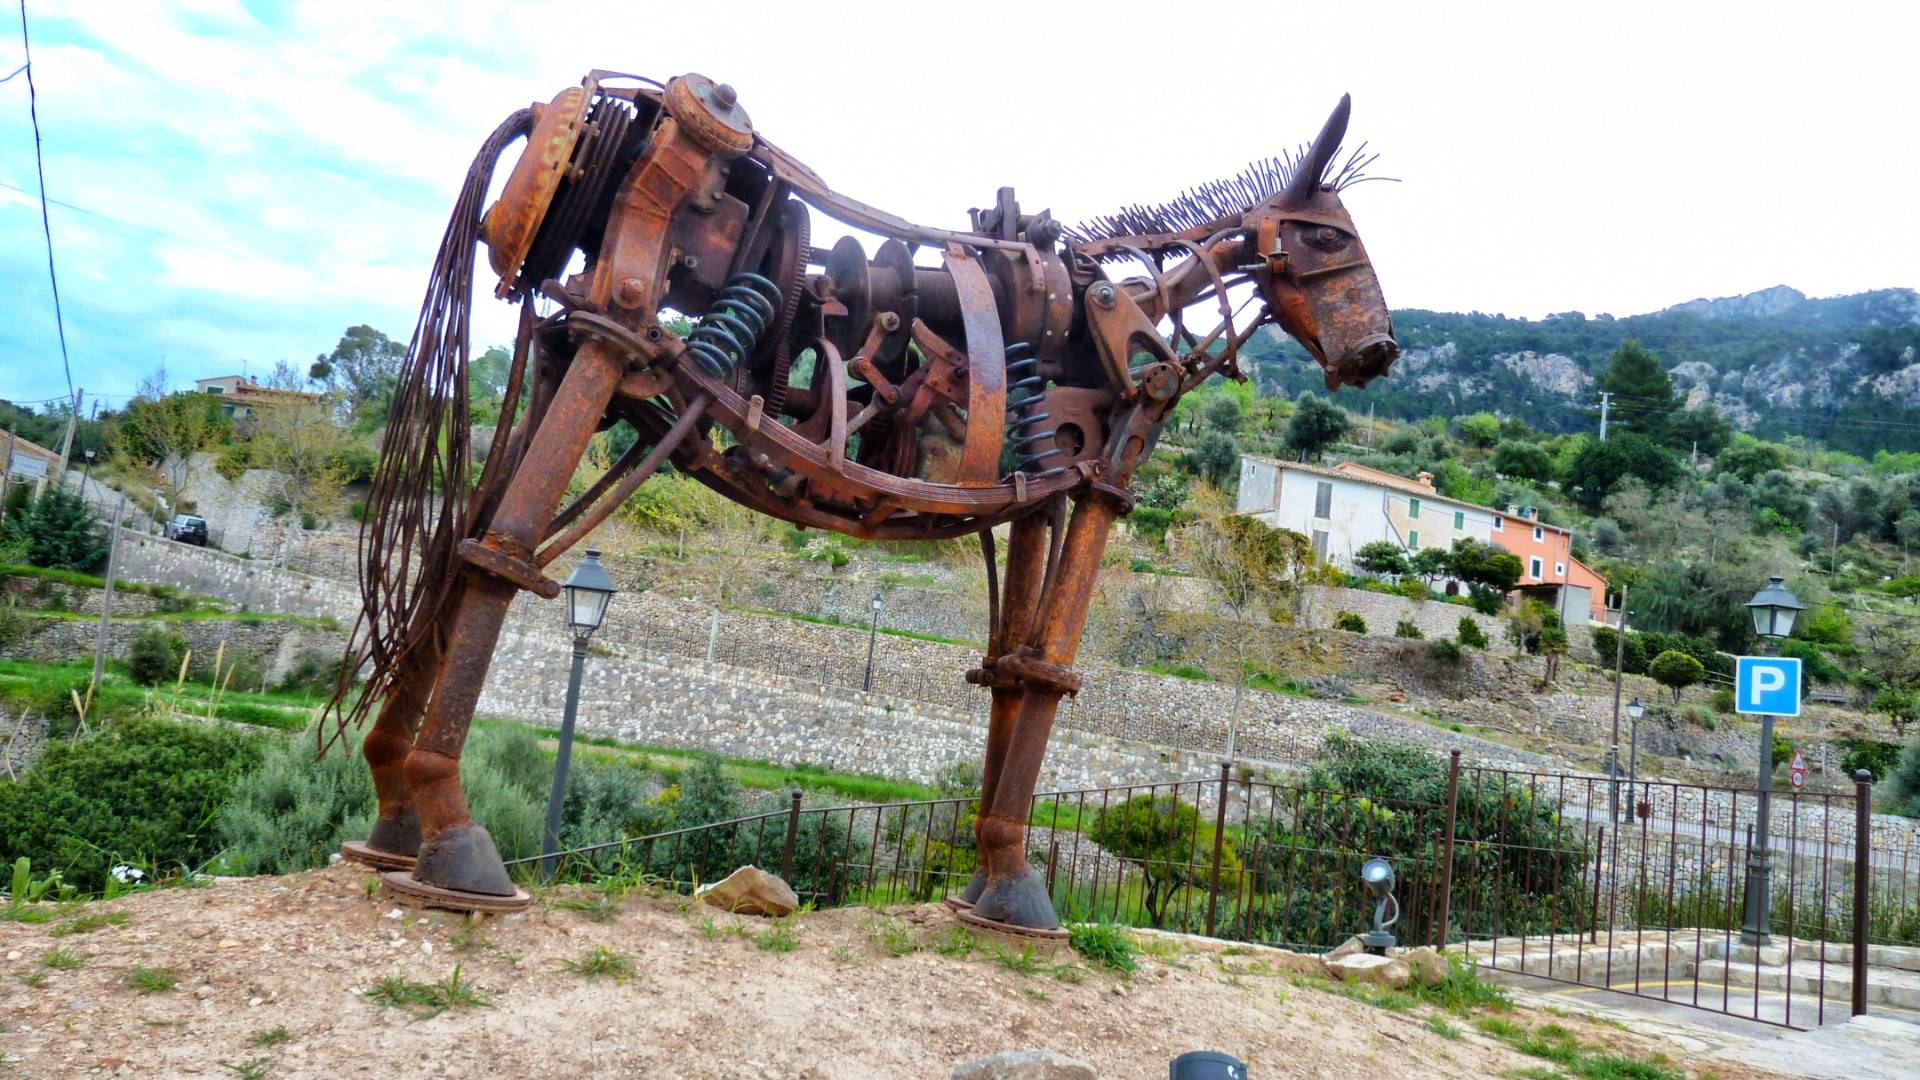 Iron horse art